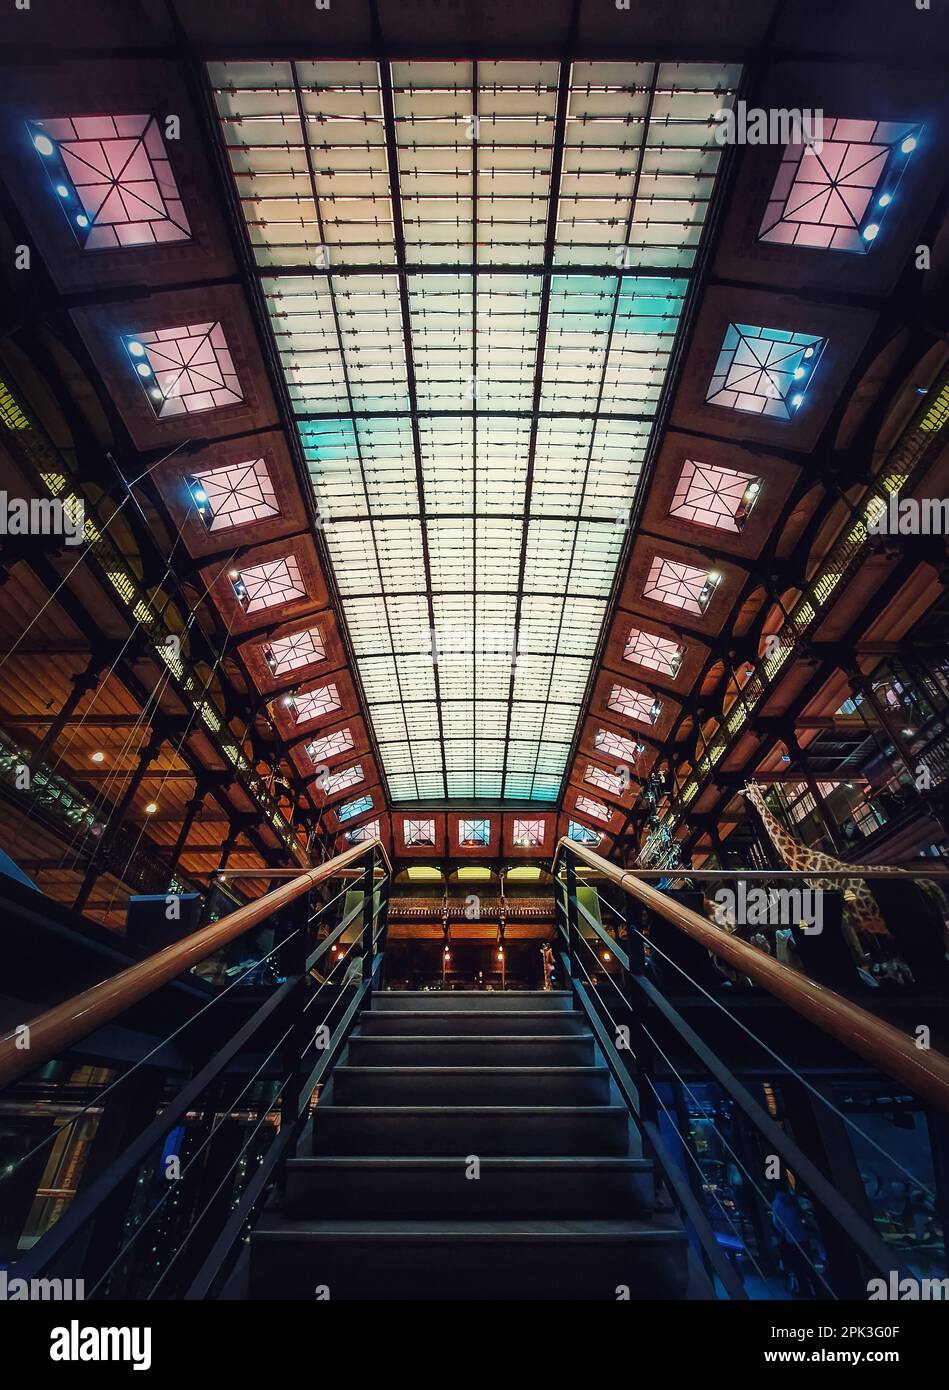 Treppe im Naturkundemuseum, Paris, Frankreich. Architektonische Details und glühende Glasdecke Stockfoto